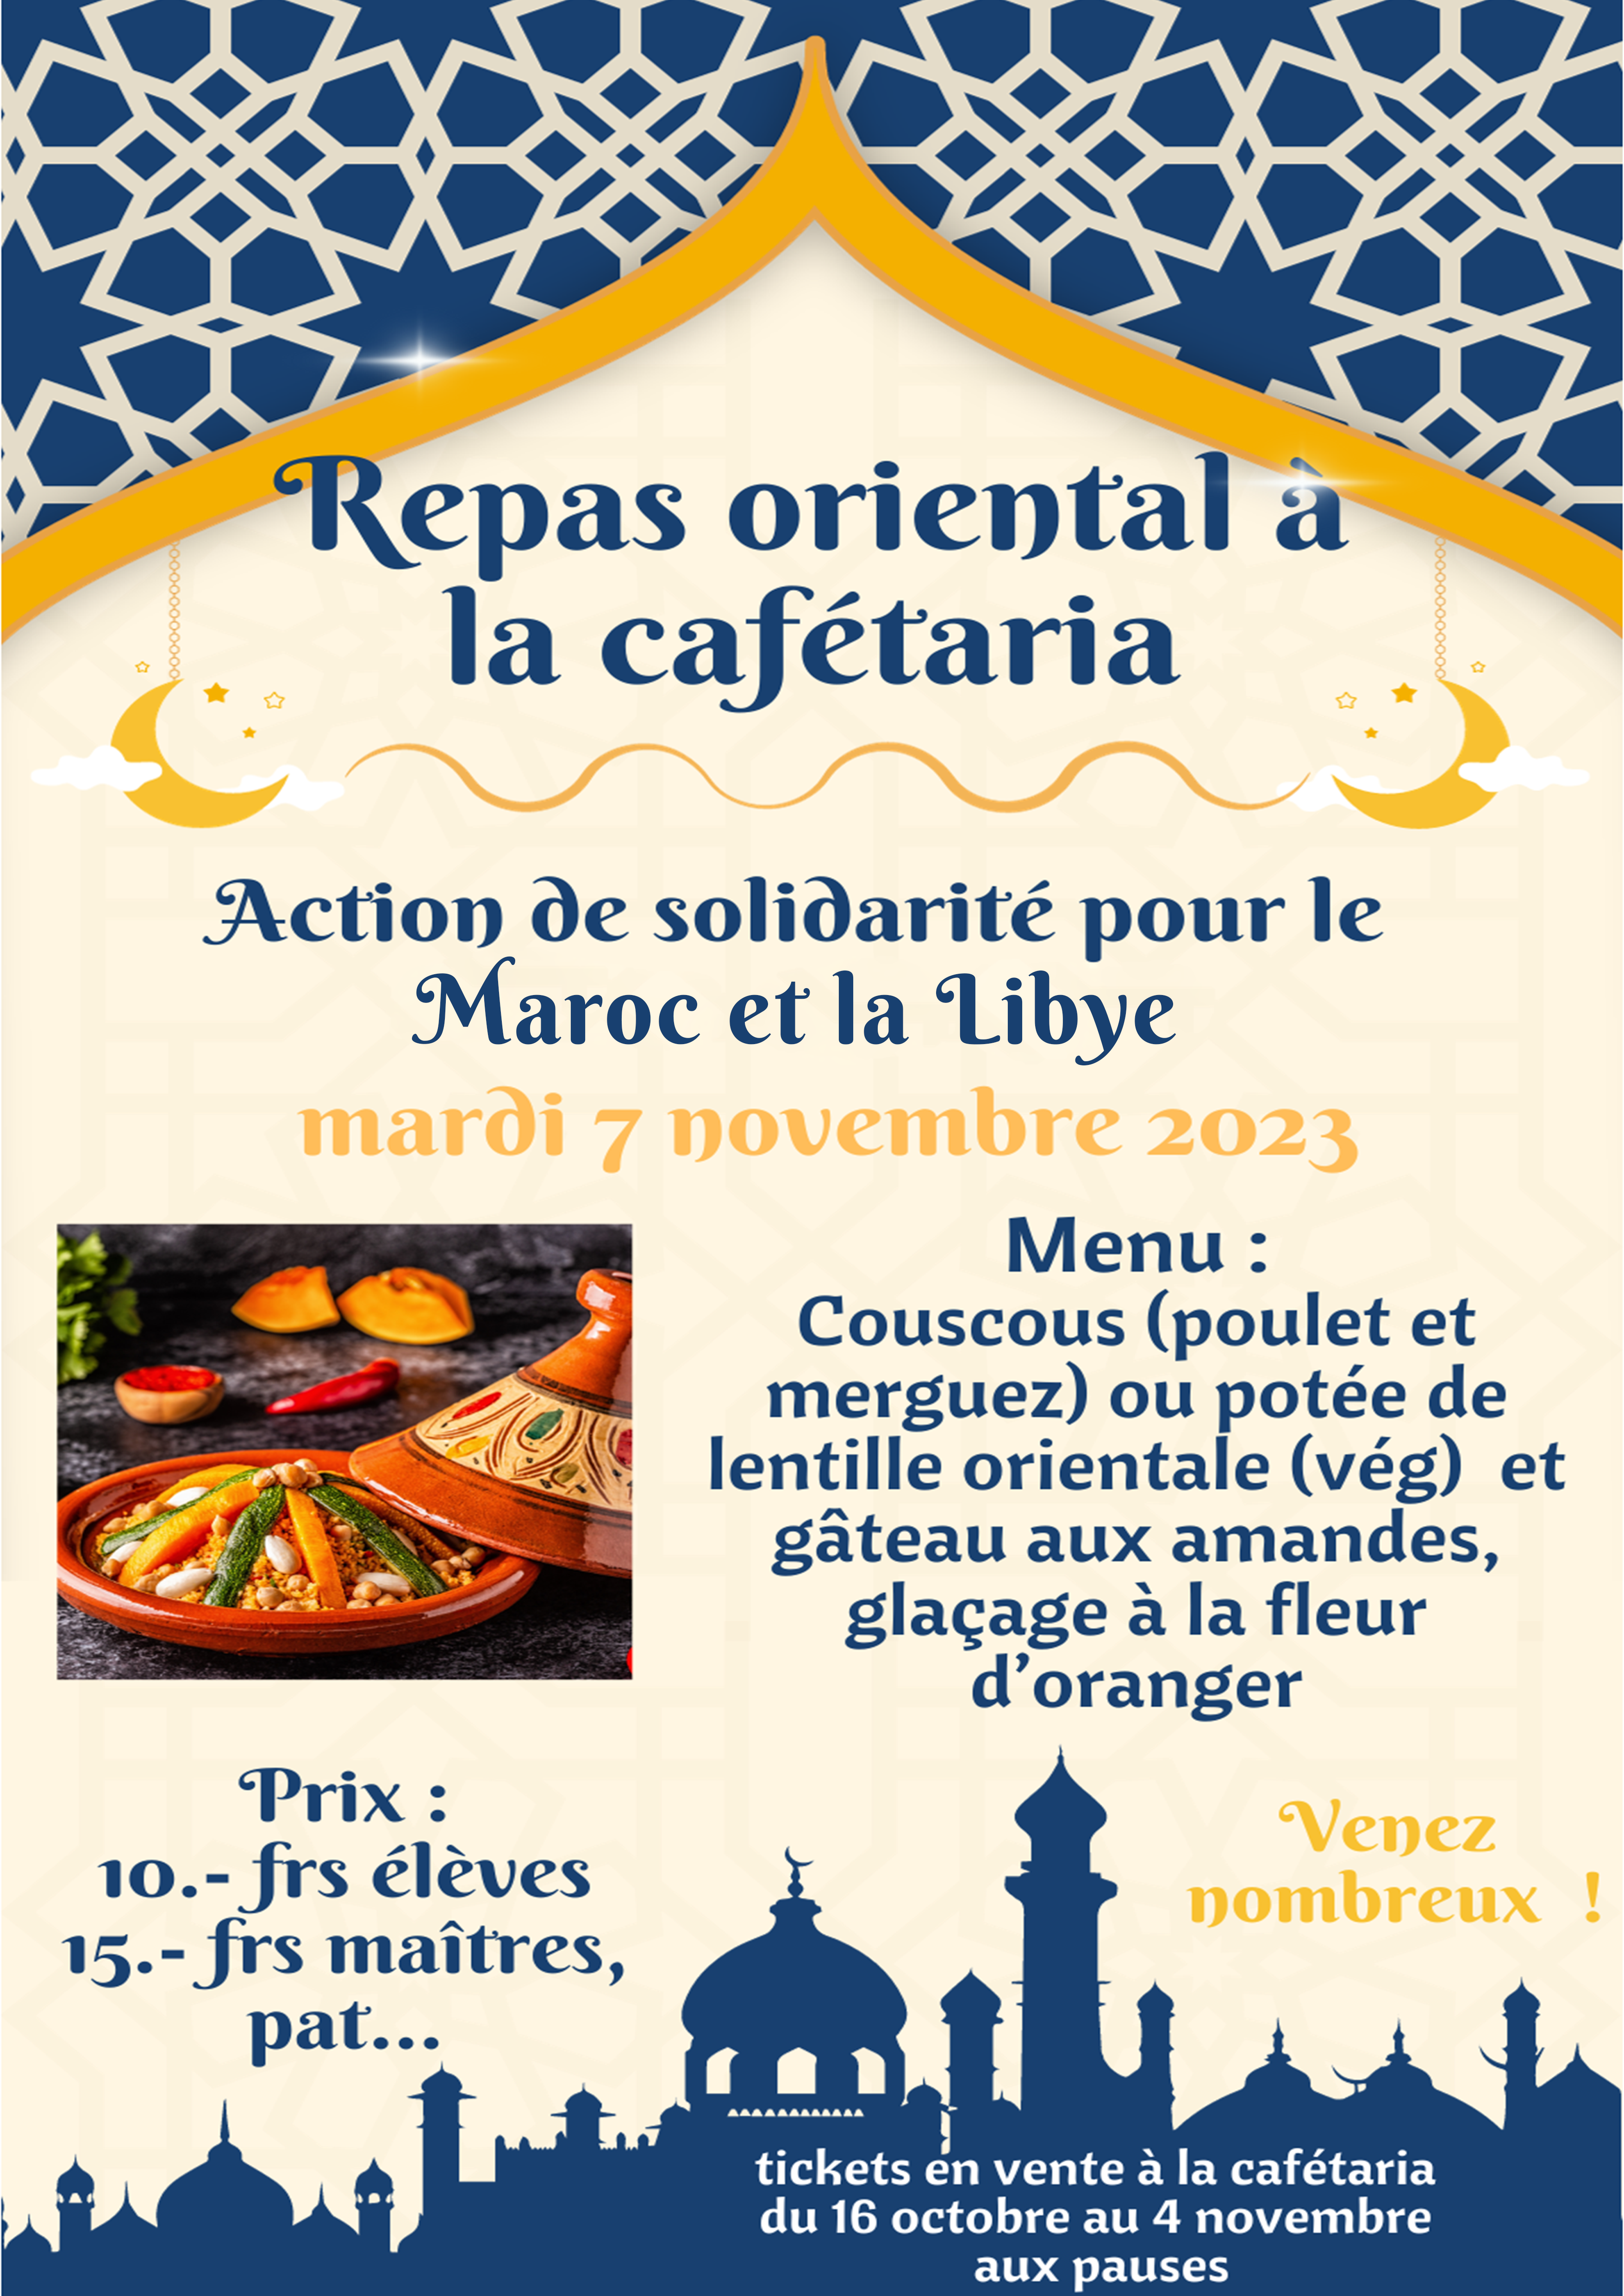 Repas oriental mardi 7 novembre en solidarité avec le Maroc et la Lybie